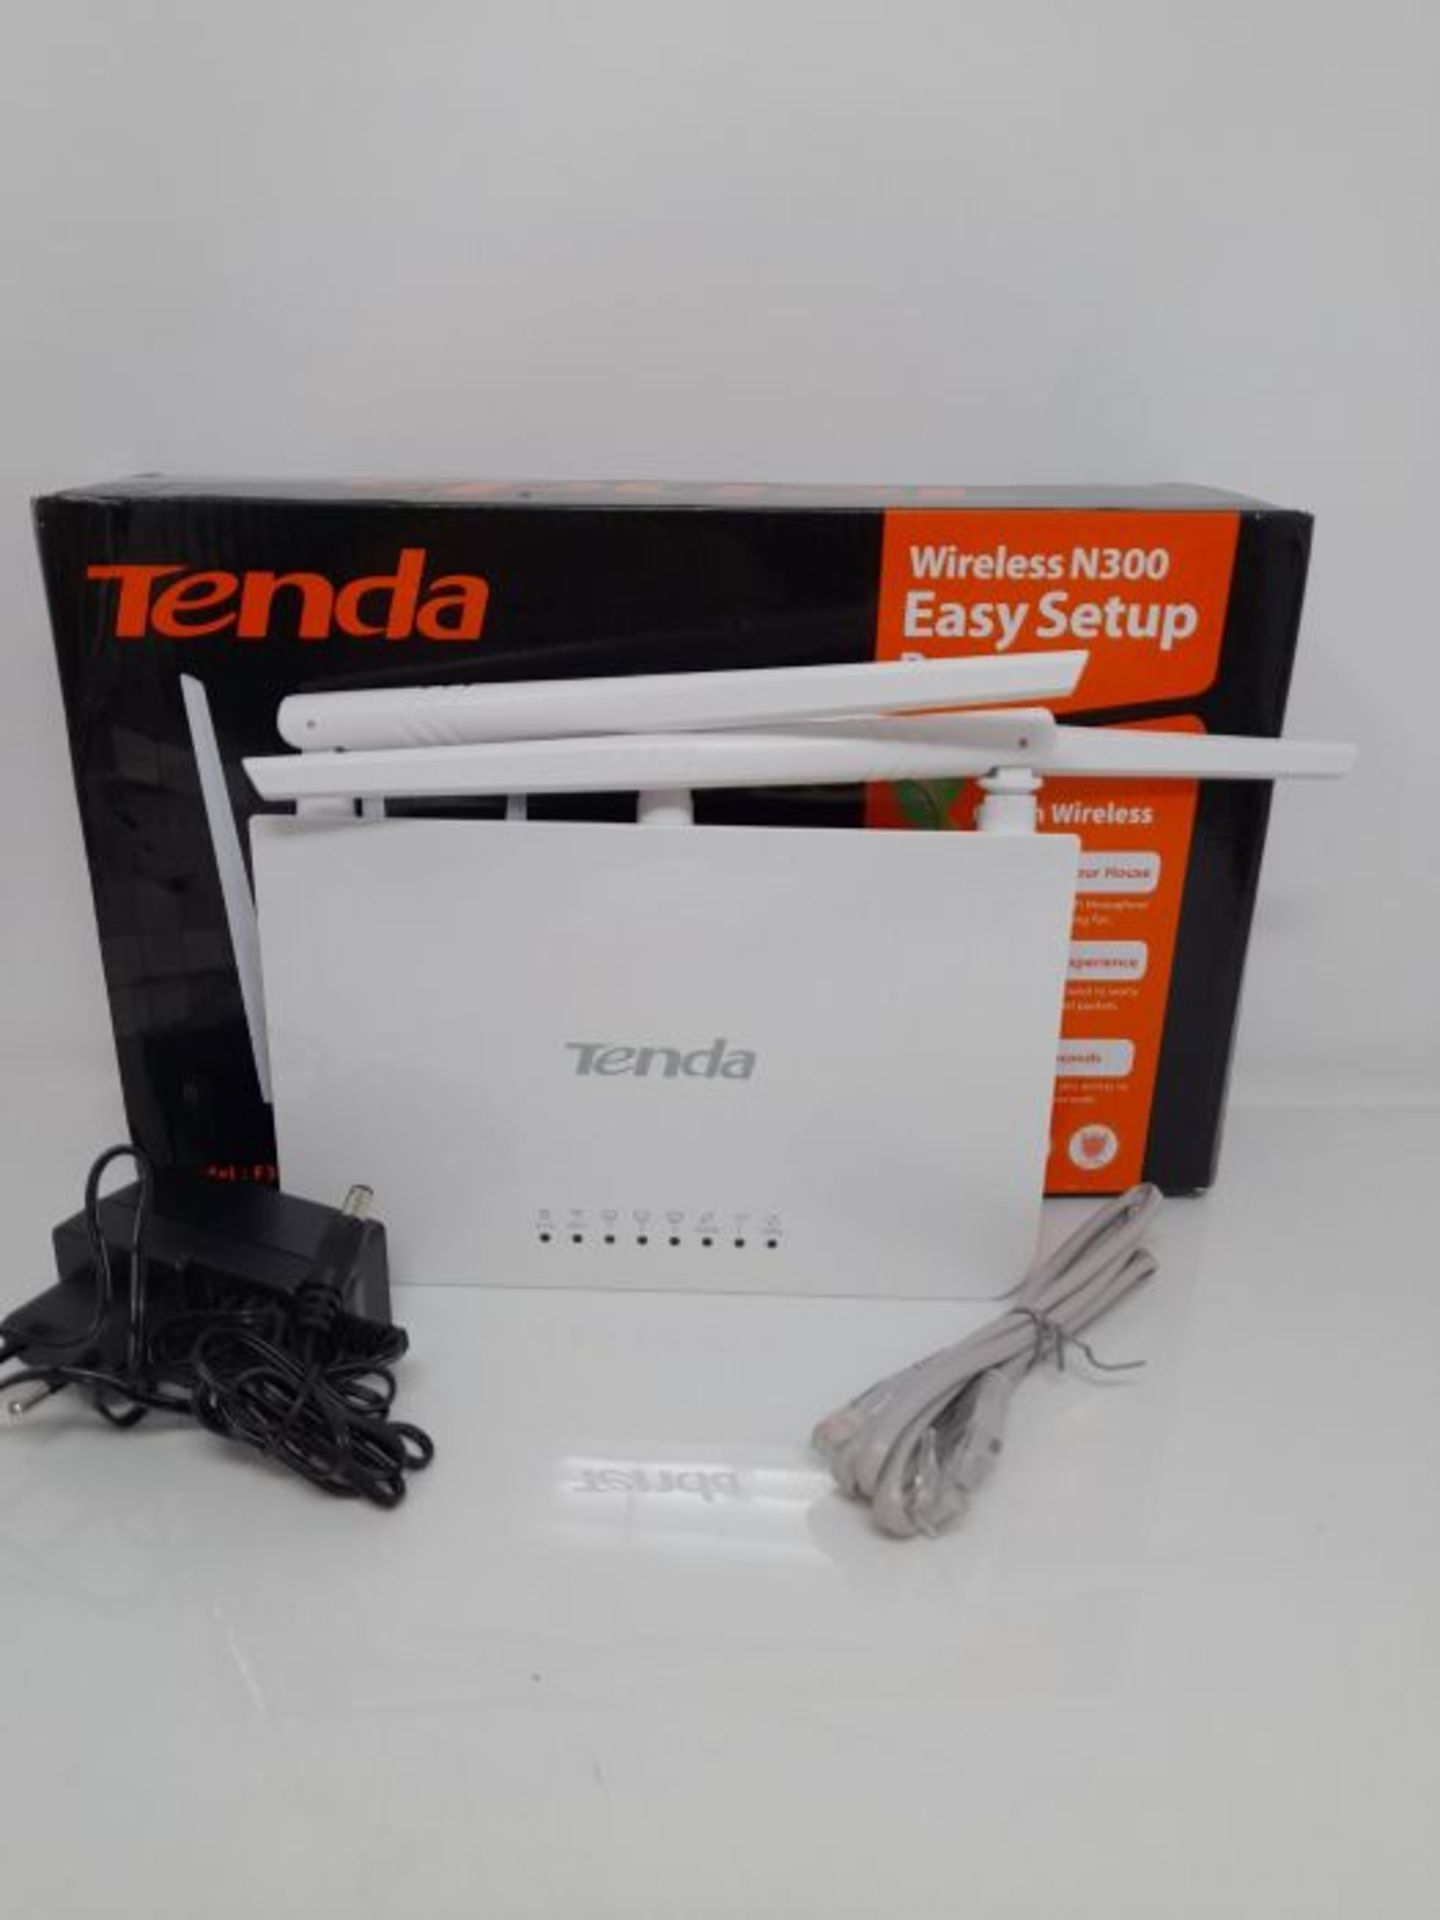 Tenda N300 Router Wireless con Antenne 5dBi ad Alta Potenza - Image 3 of 3